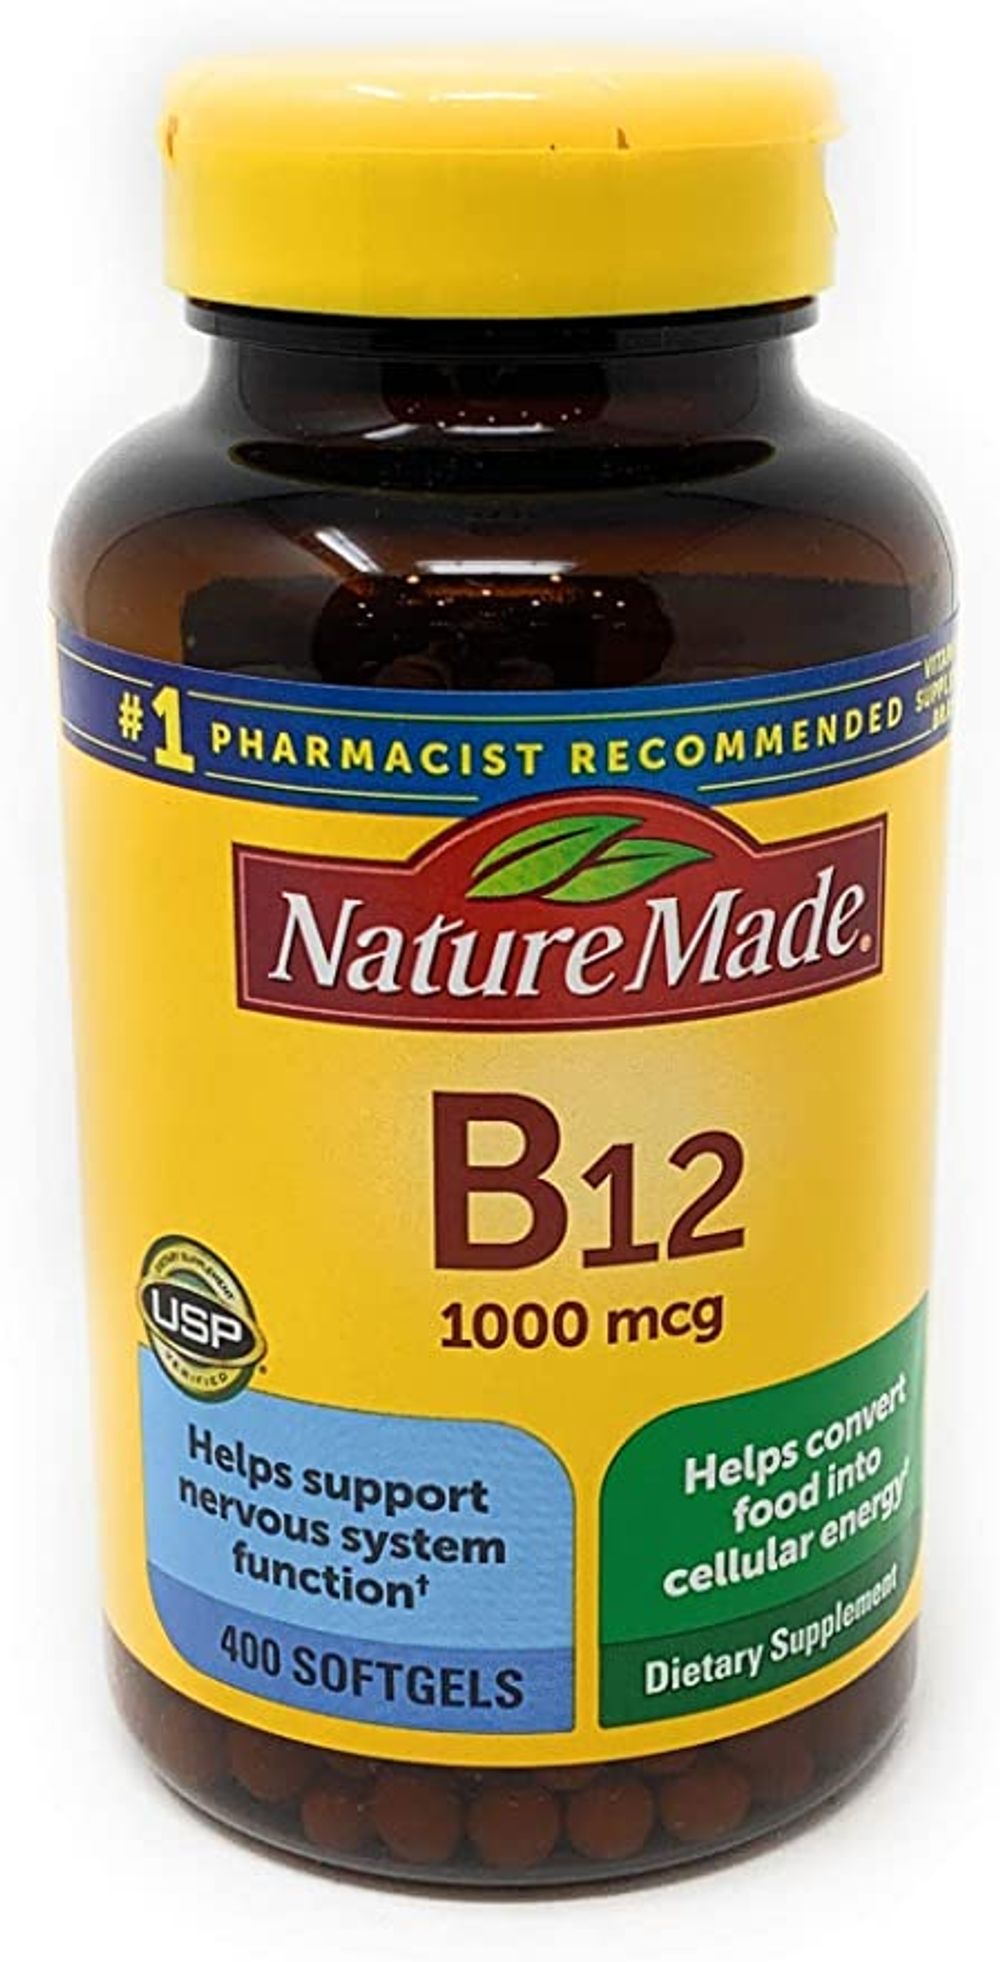 Nature Made Vitamin B12 1000 mcg, 400 Softgels